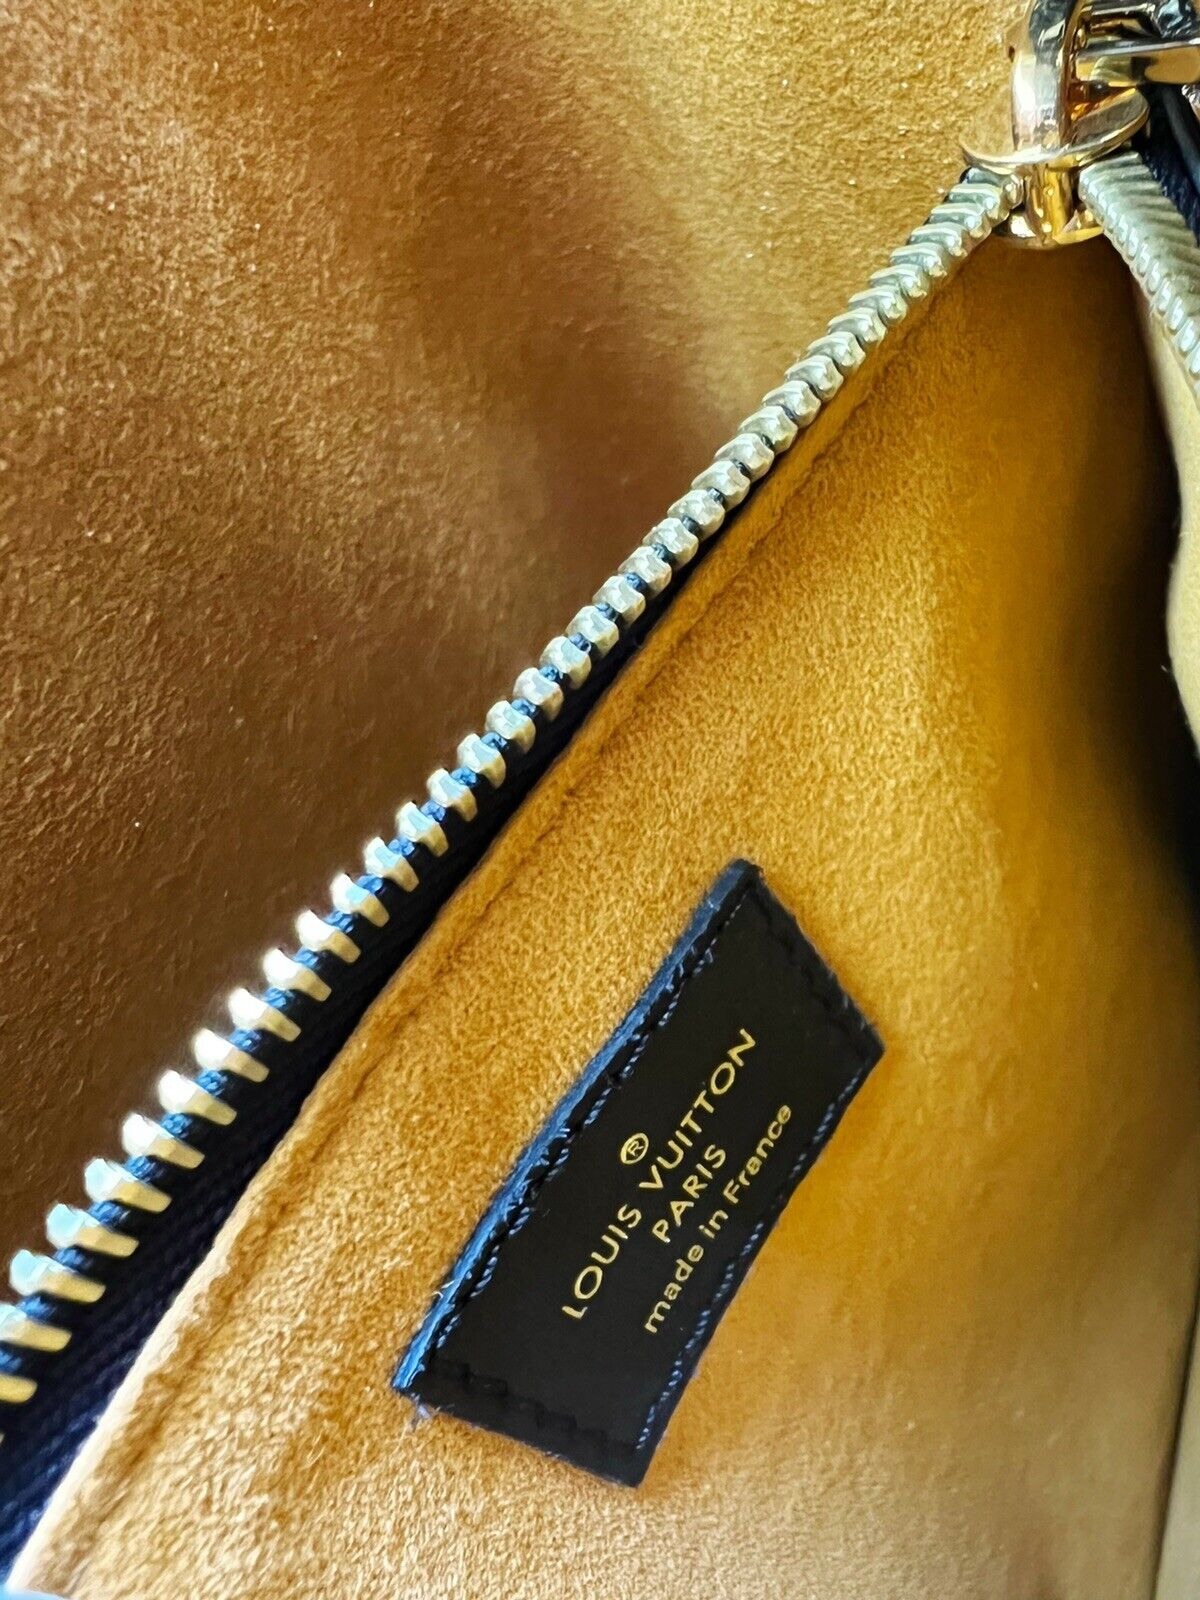 Pre-order] LV Monogram Neo Bucket Bag (Brown / Gold), Luxury, Bags